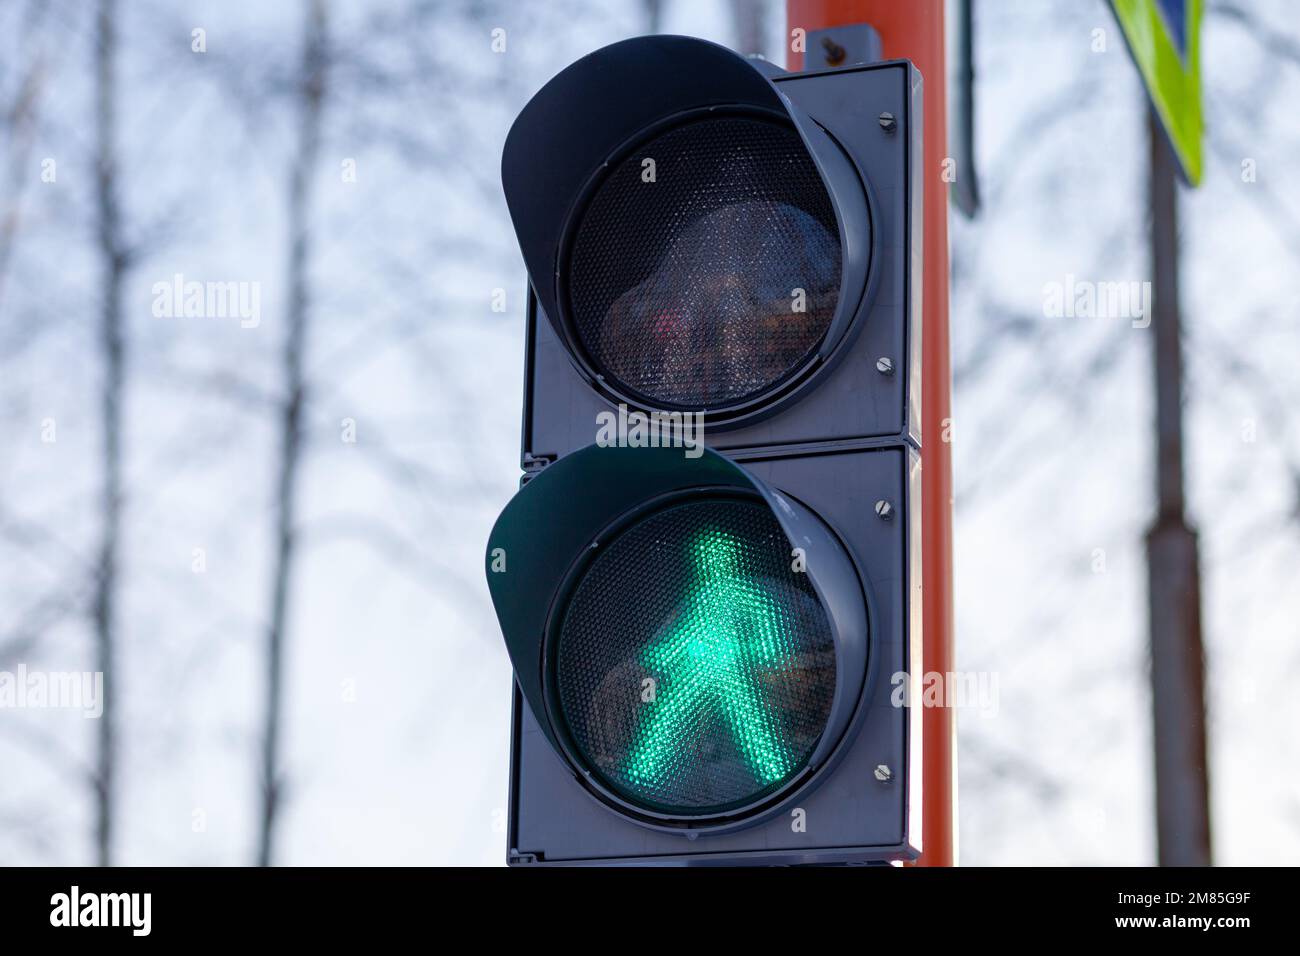 Semaforo verde su un semaforo pedonale. Attraversamento sicuro della strada da parte dei pedoni. Foto Stock